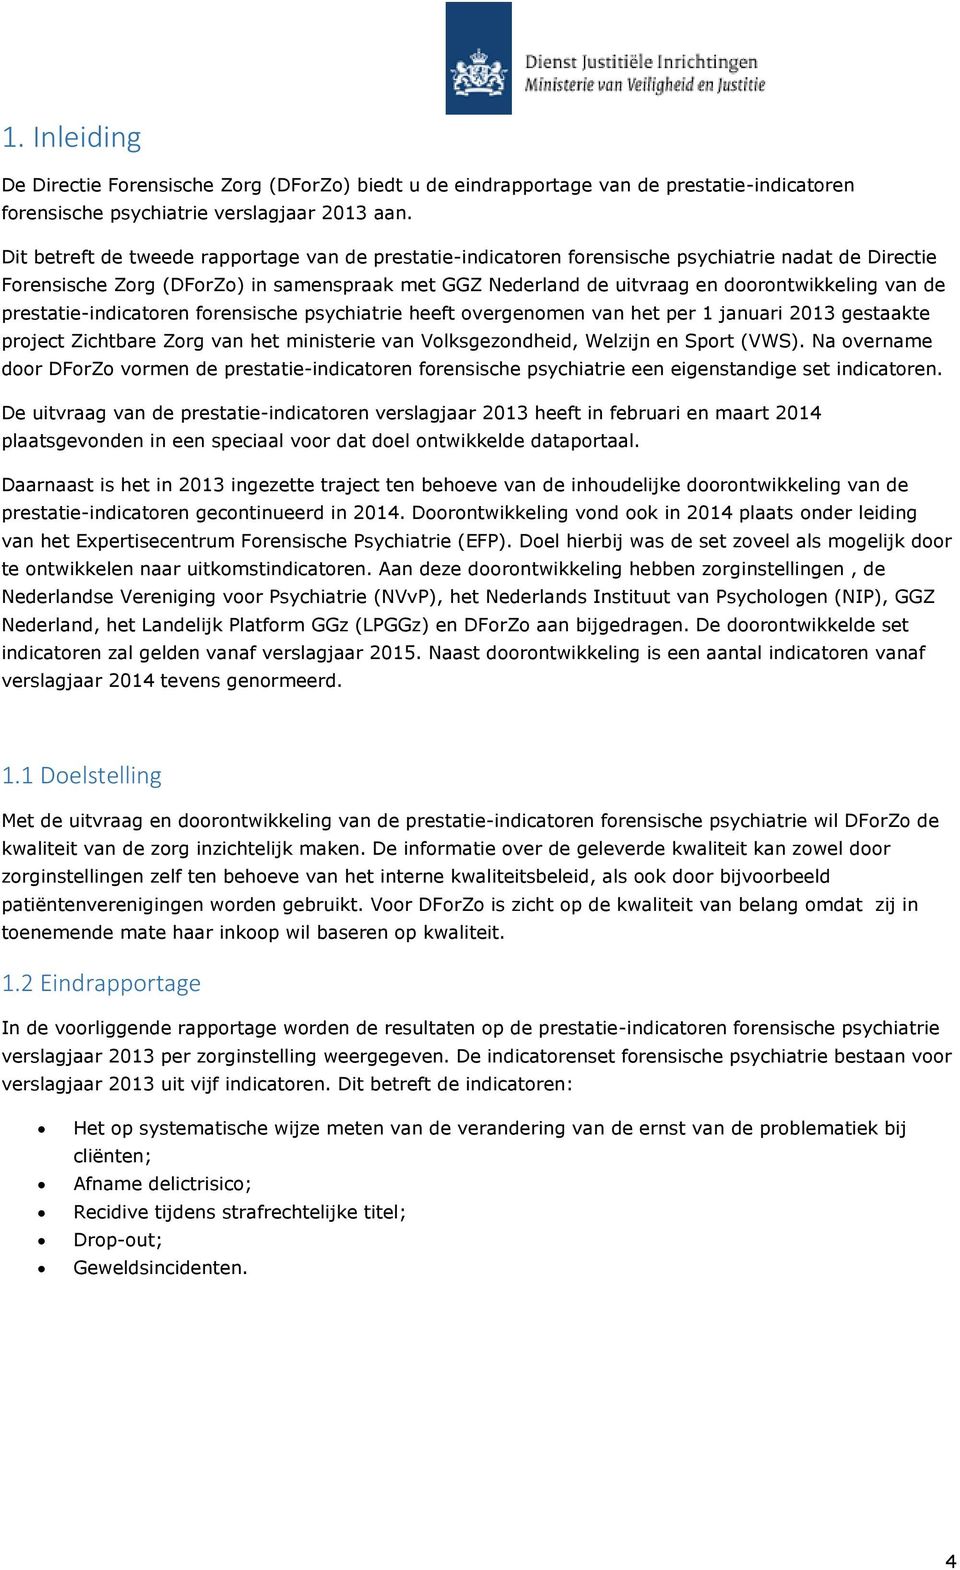 de prestatie-indicatoren forensische psychiatrie heeft overgenomen van het per 1 januari 2013 gestaakte project Zichtbare Zorg van het ministerie van Volksgezondheid, Welzijn en Sport (VWS).